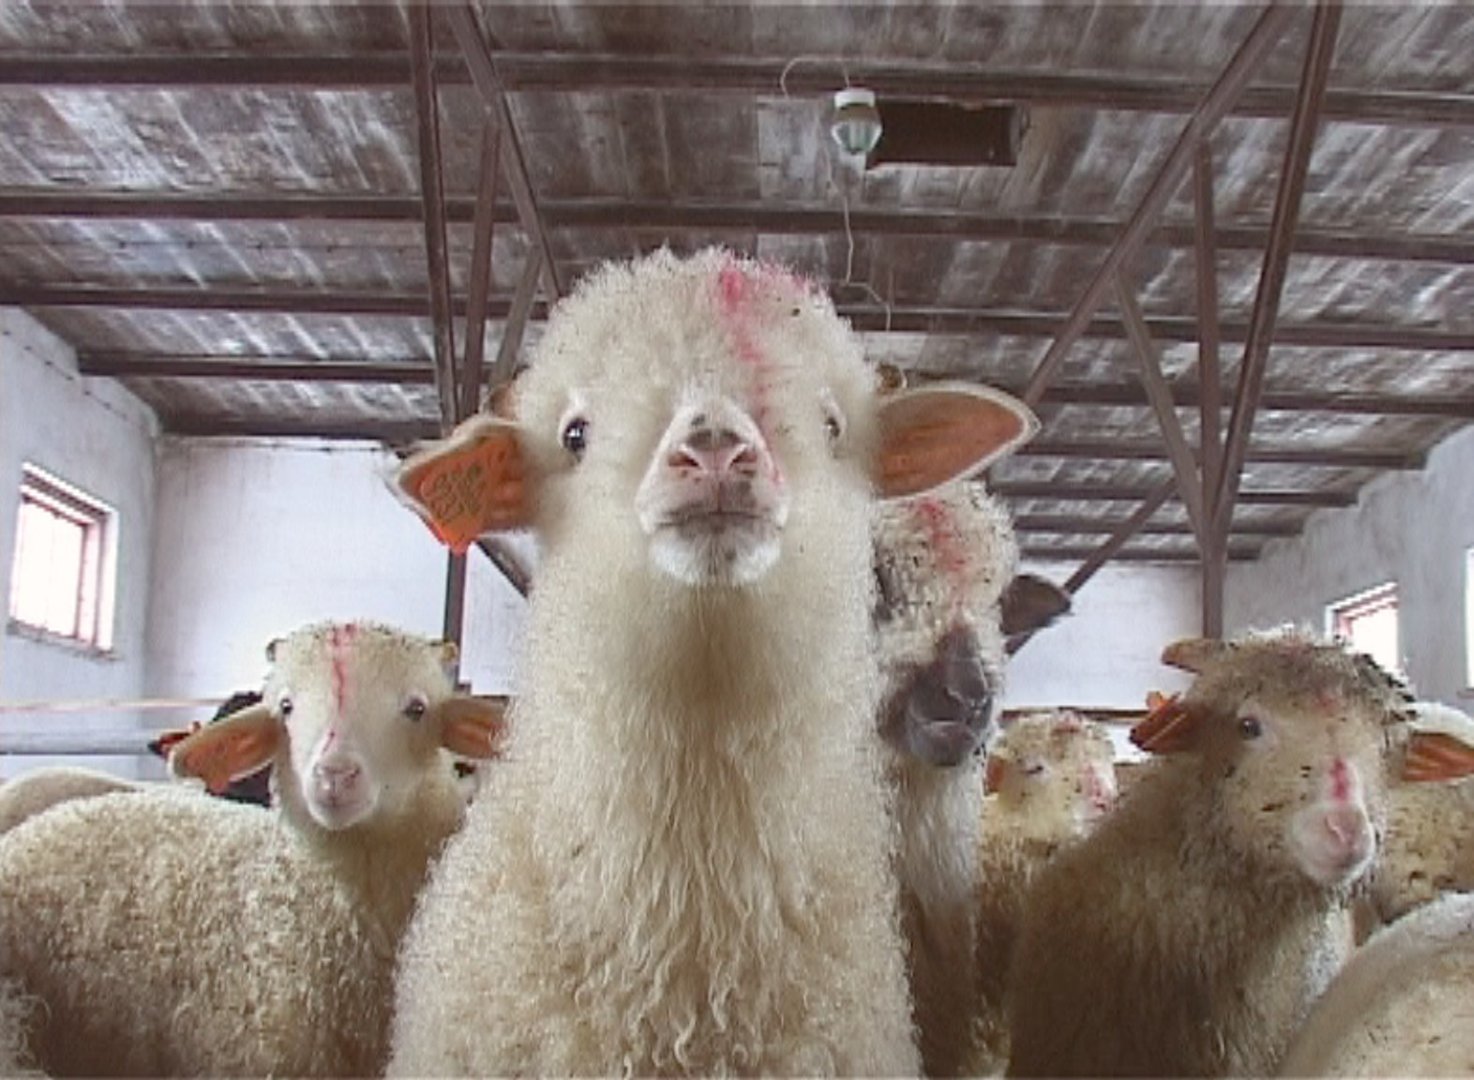 Hodowca owiec z Podhala: Obrońcy zwierząt chcą nas zniszczyć [WYWIAD] |  Gazeta Krakowska